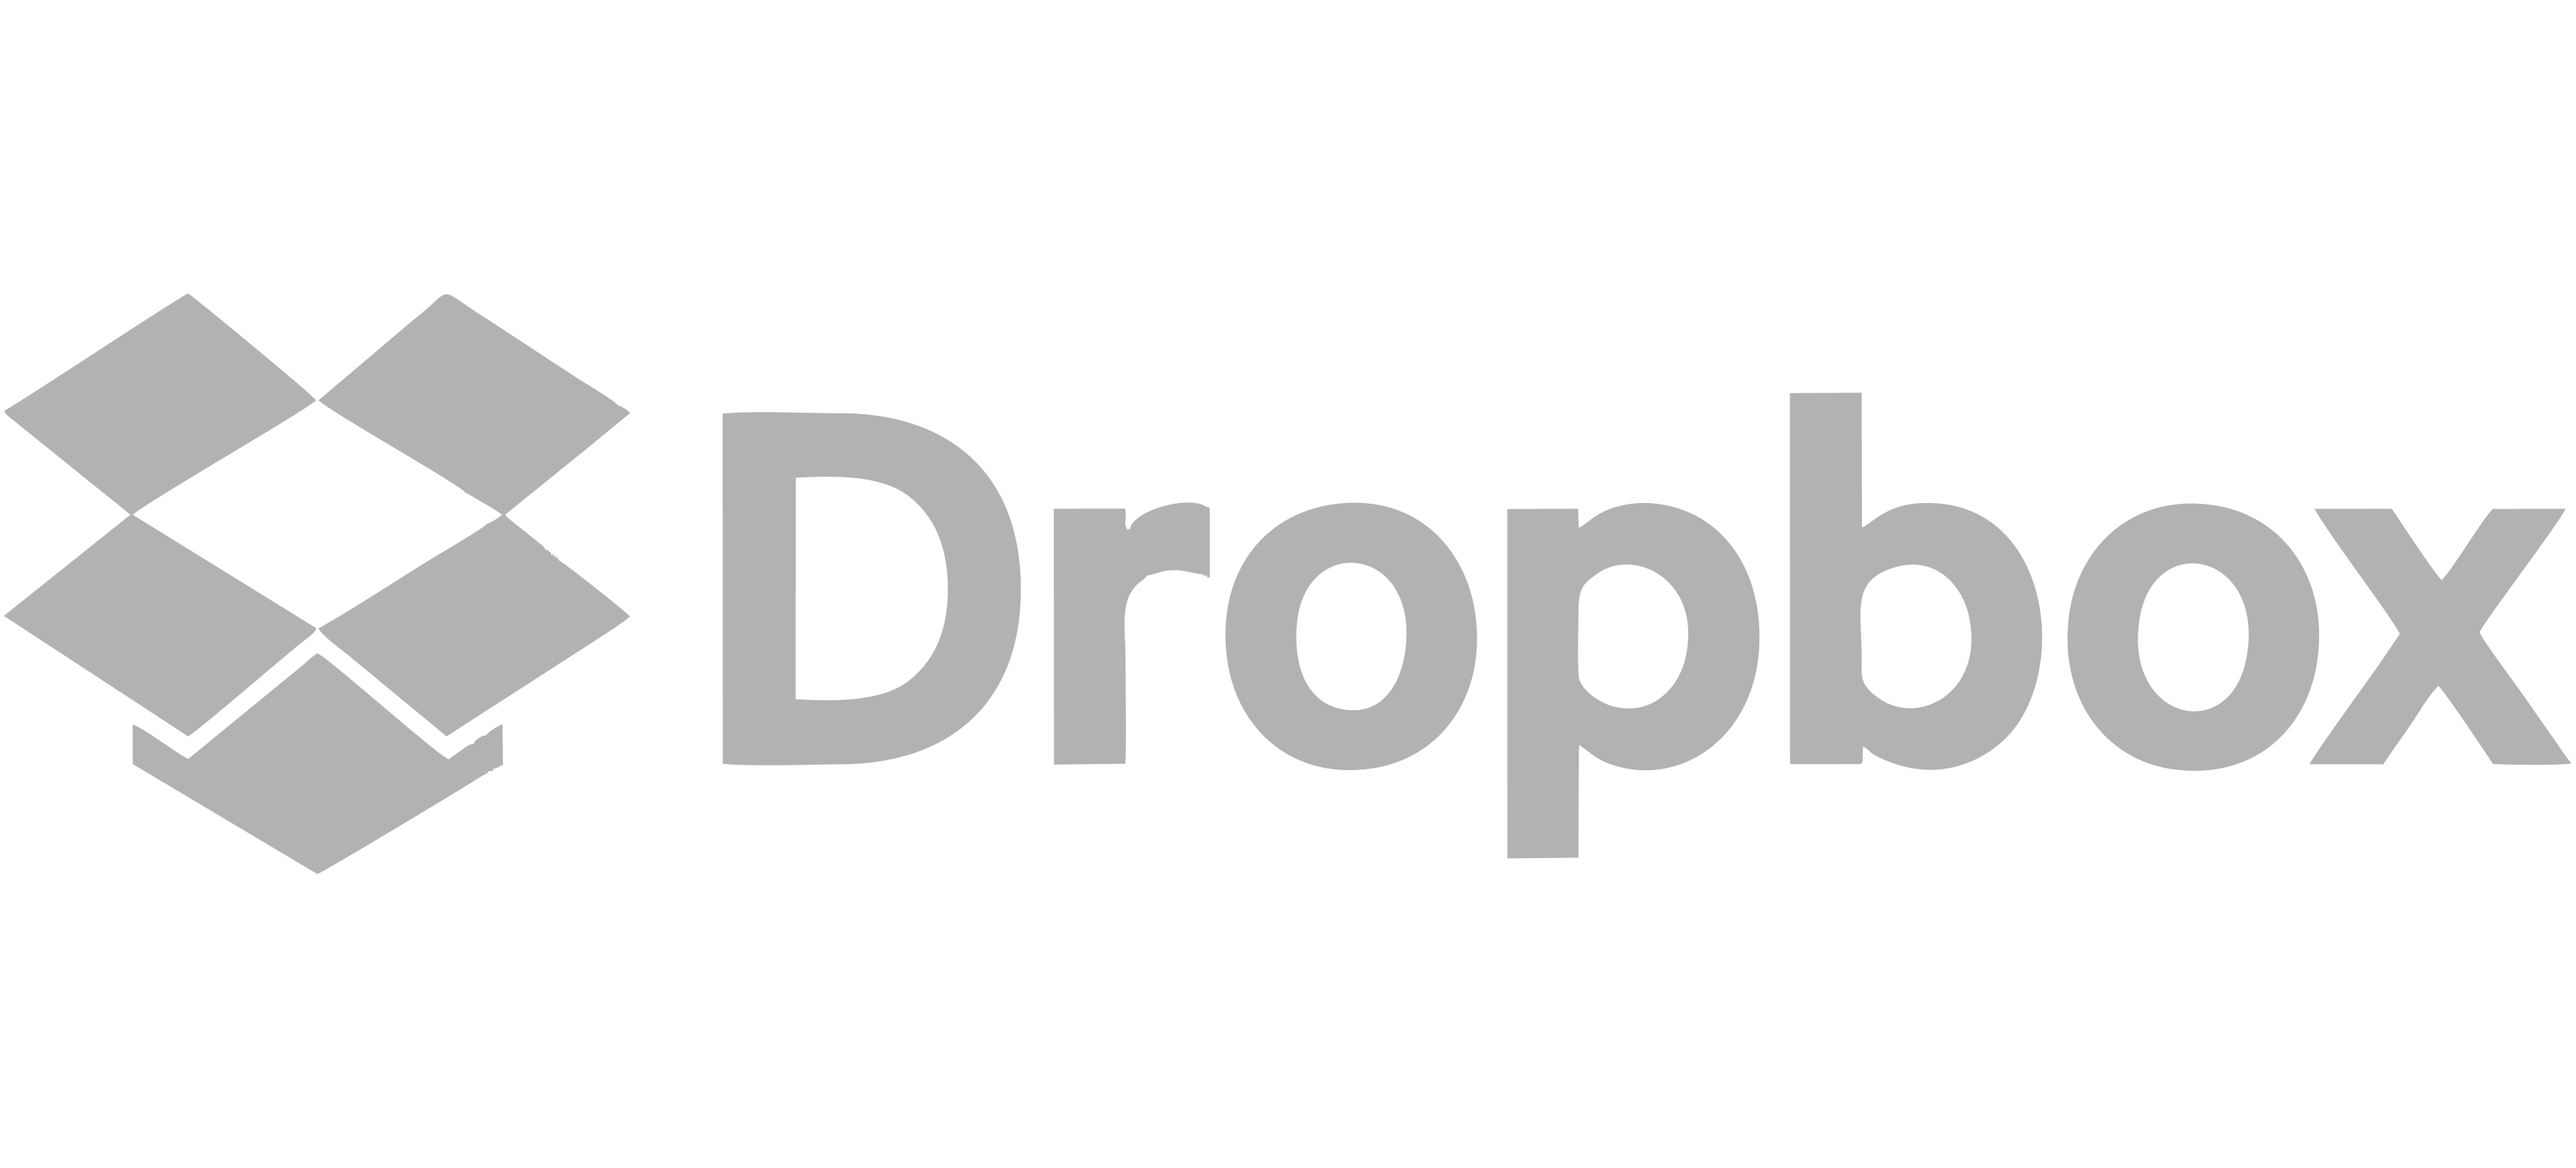 Dropbox company logo